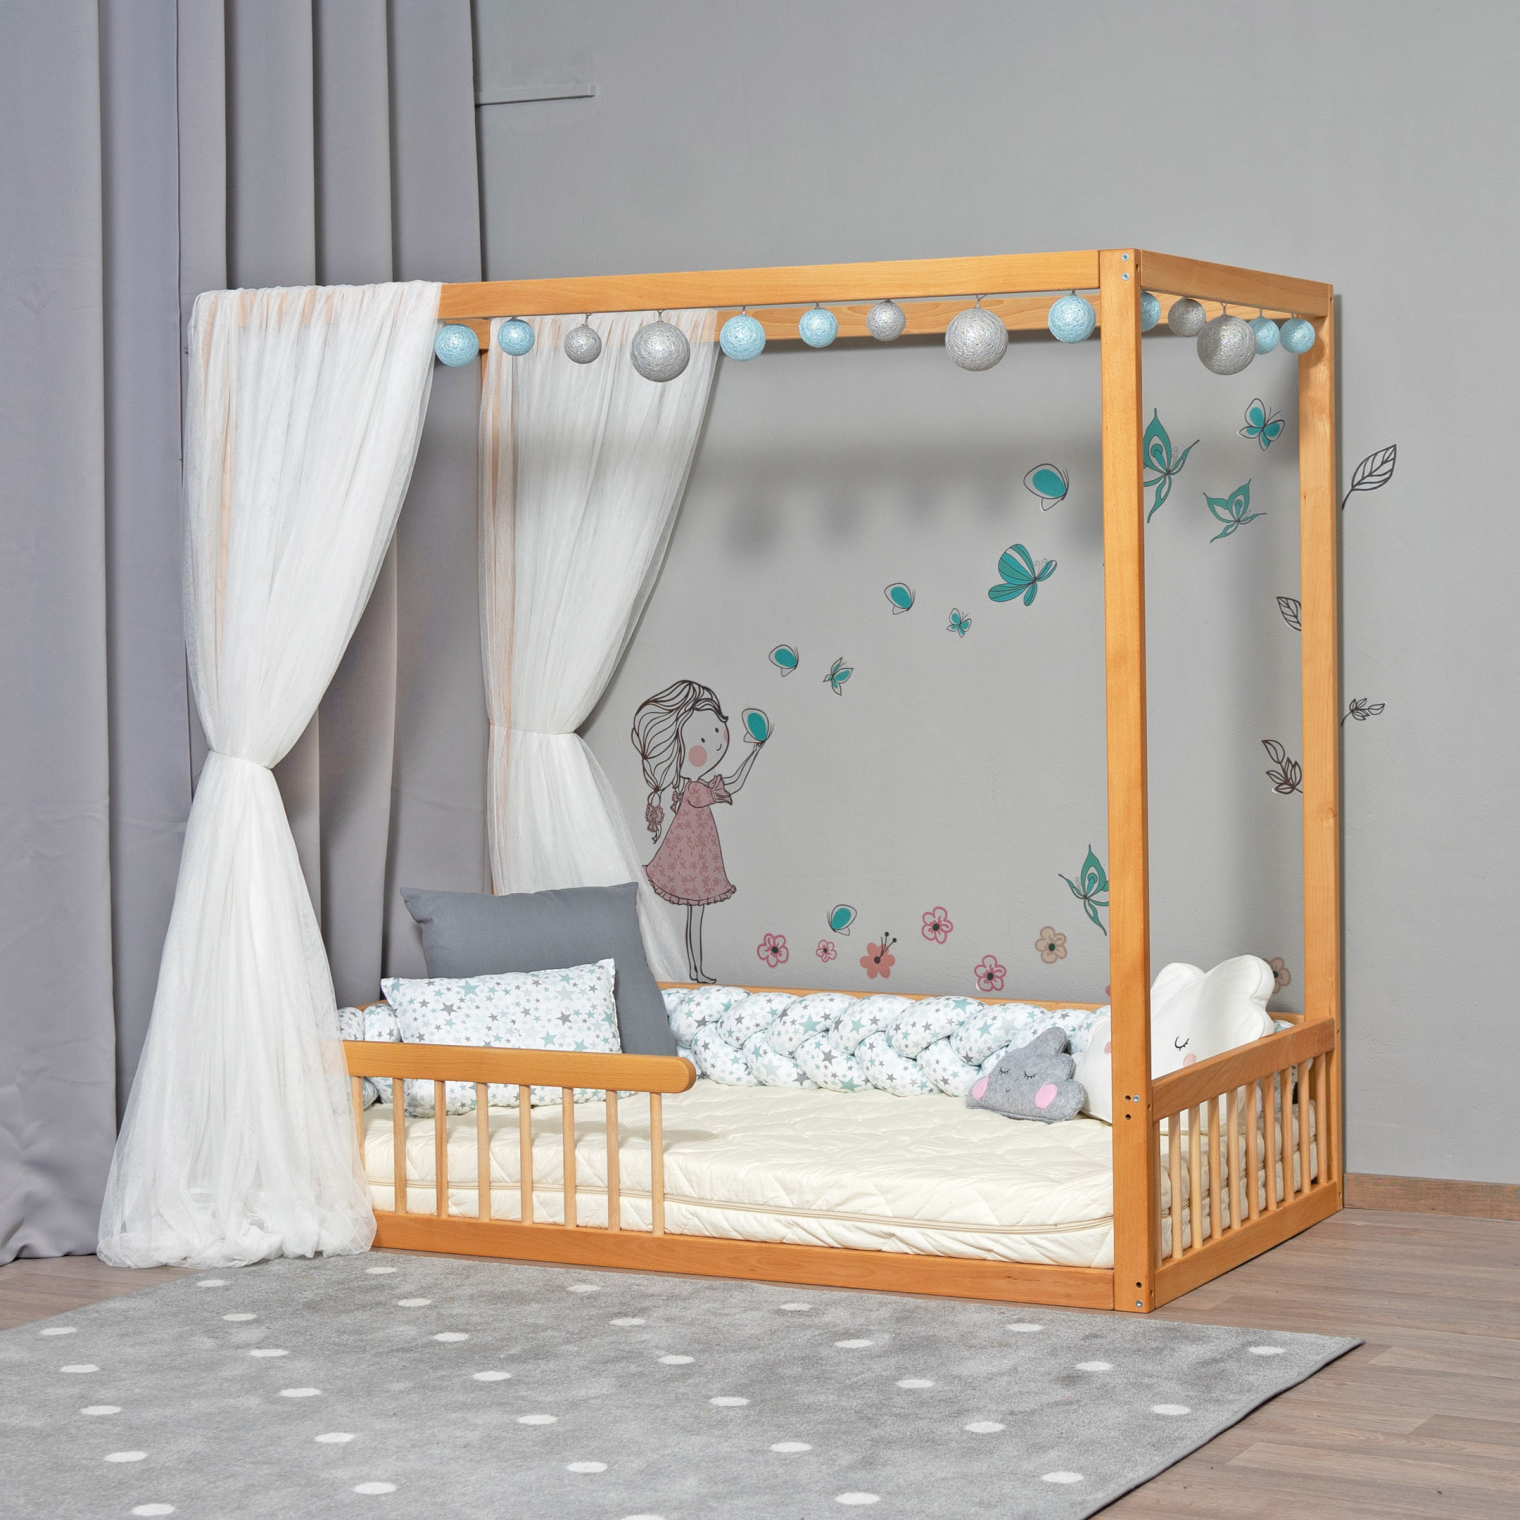 KUBO+ Montessori baby bed with rails